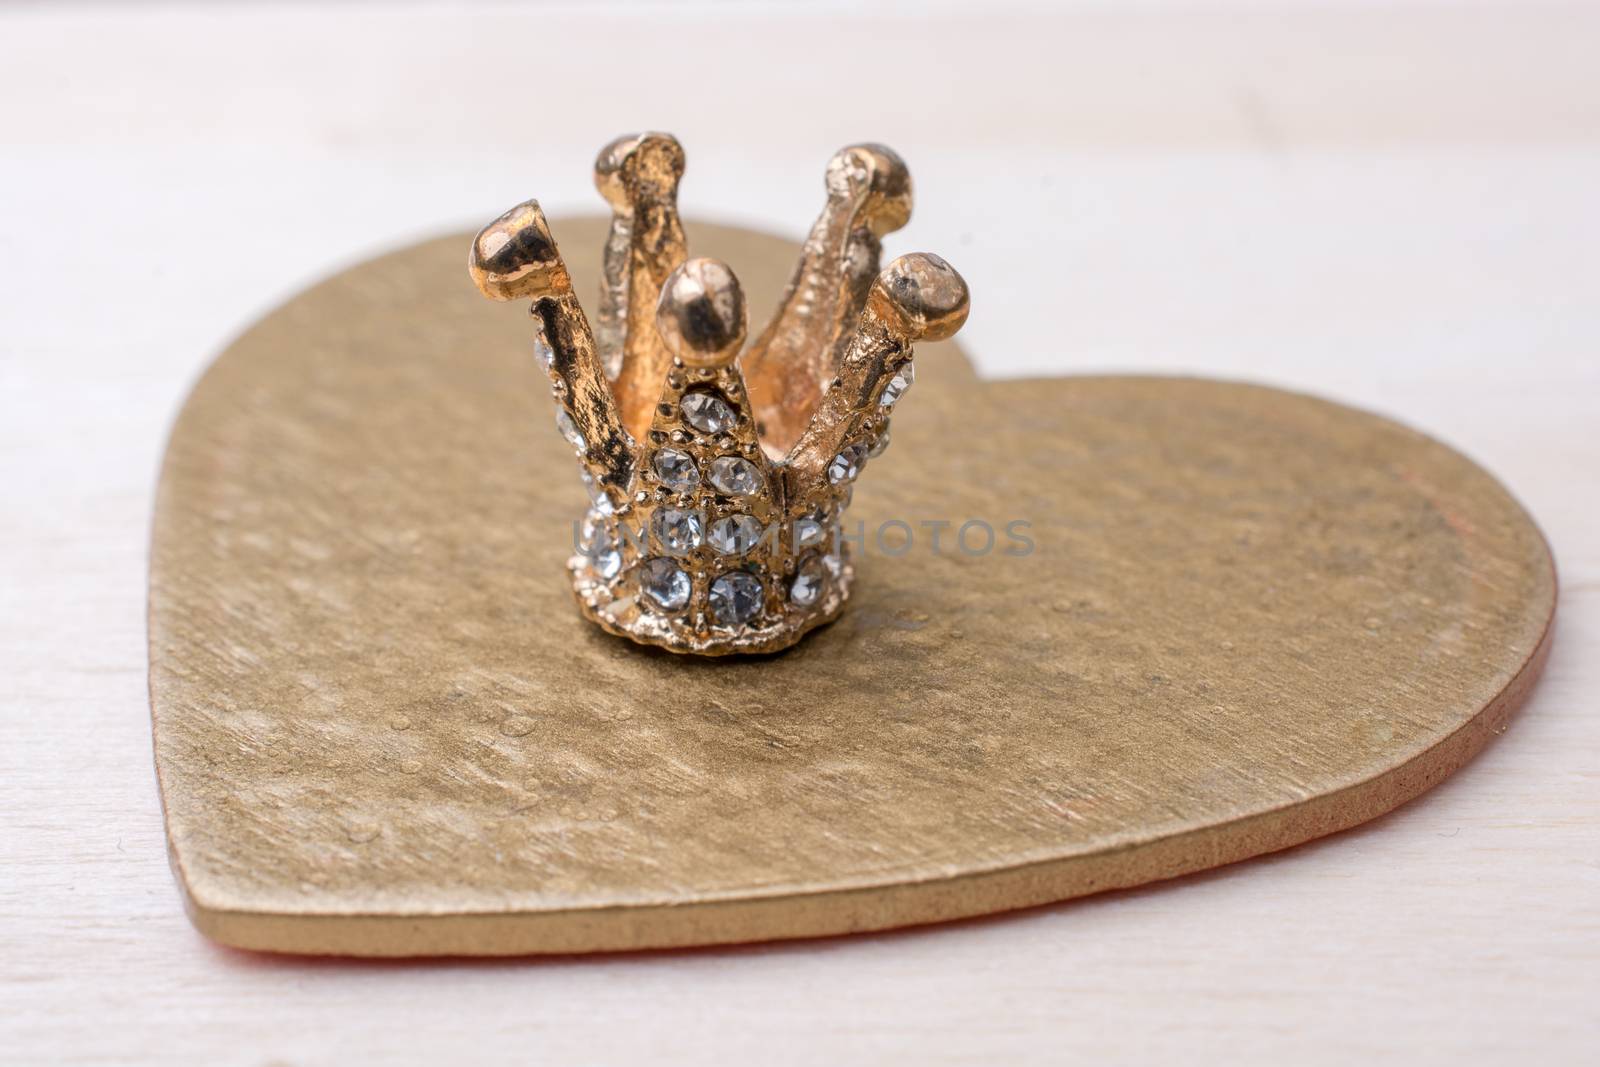 Little model crown placed on a  heart shape